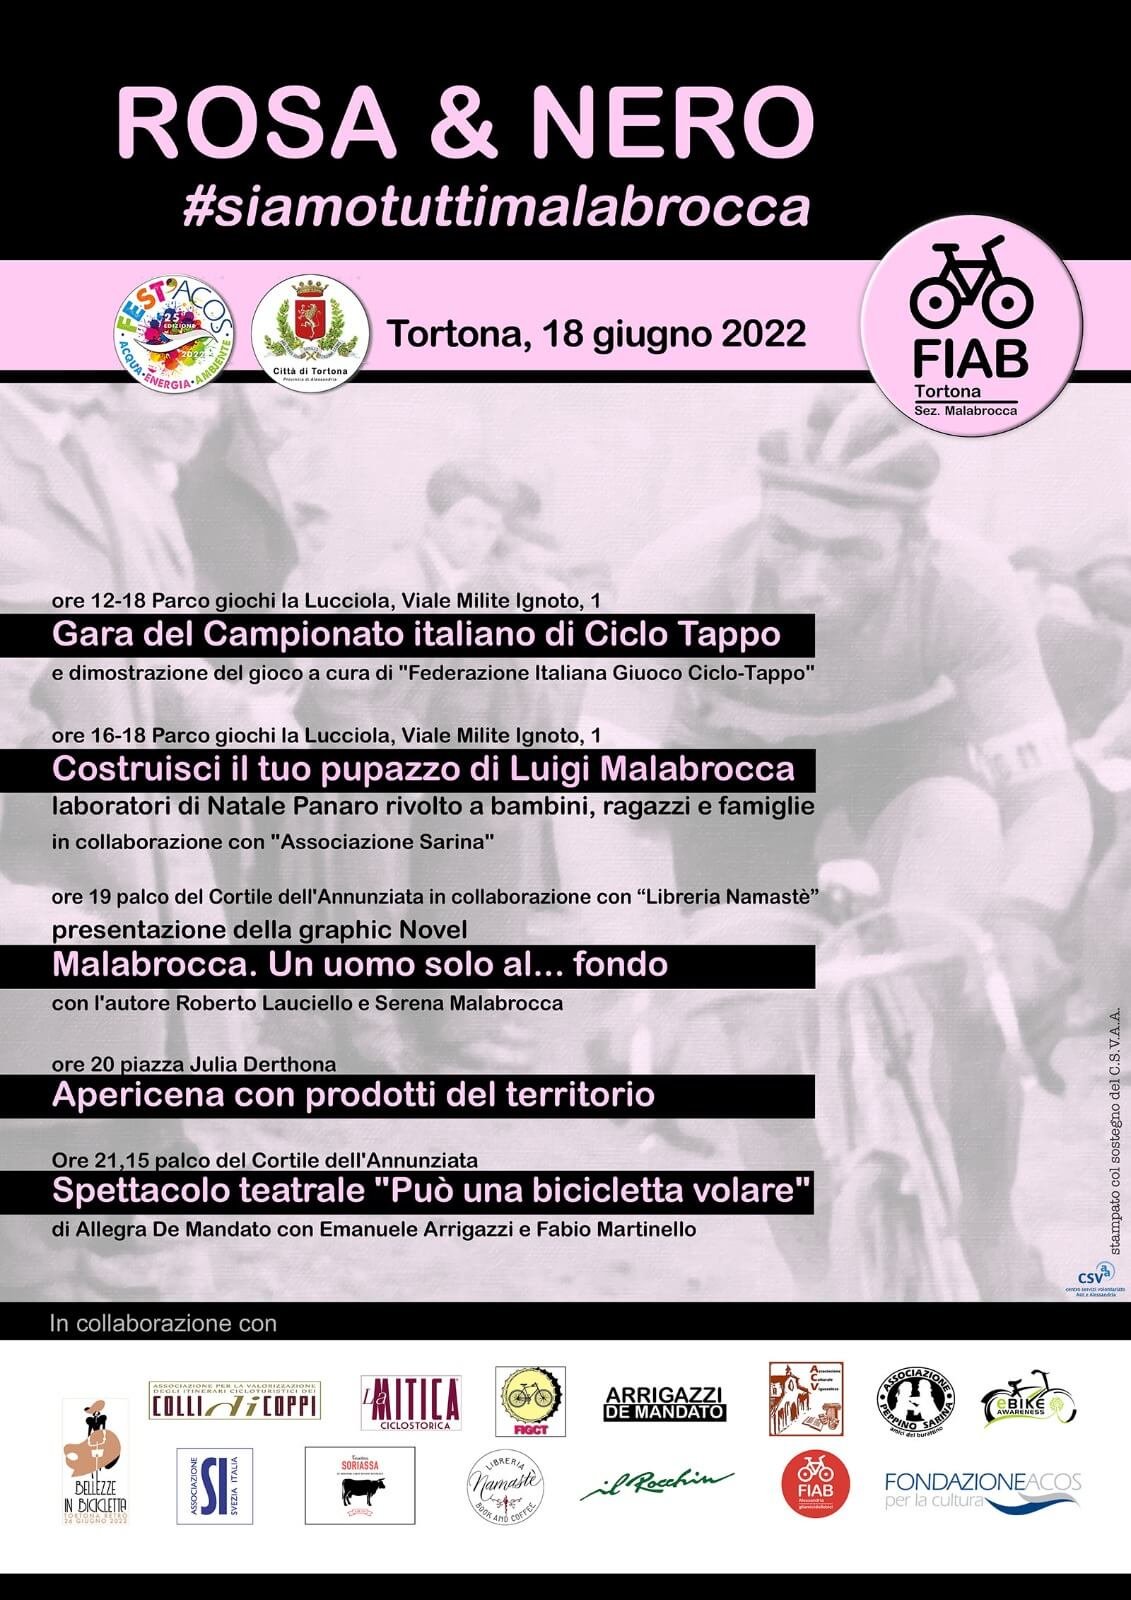 Sabato 18 giugno a Tortona “Rosa&Nero”, una giornata di eventi per ricordare Luigi Malabrocca